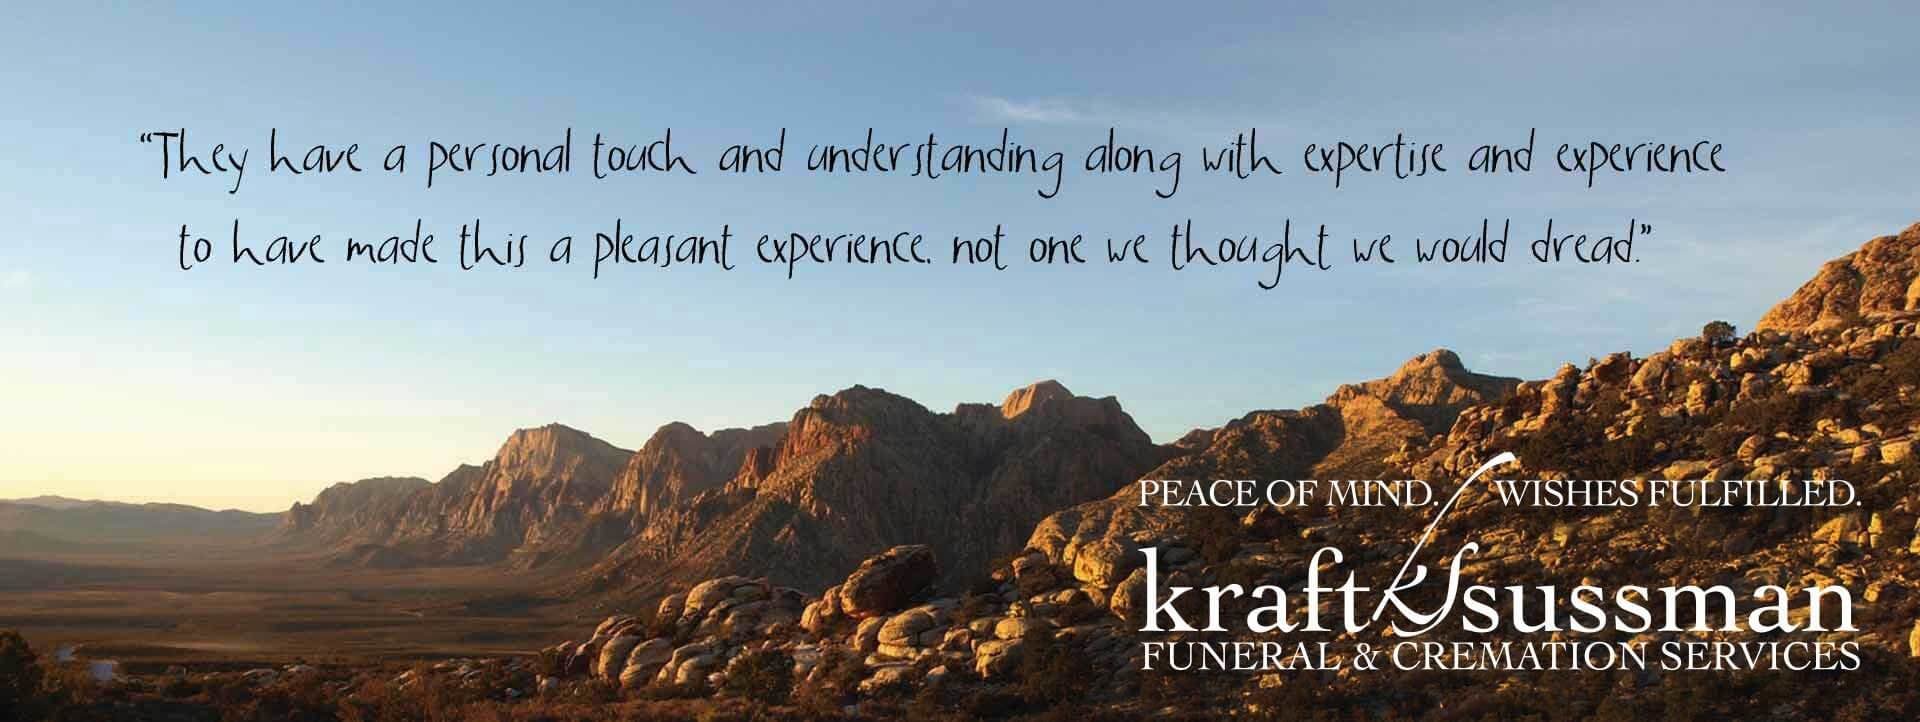 Kraft-Sussman Funeral & Cremation Services Slider 1